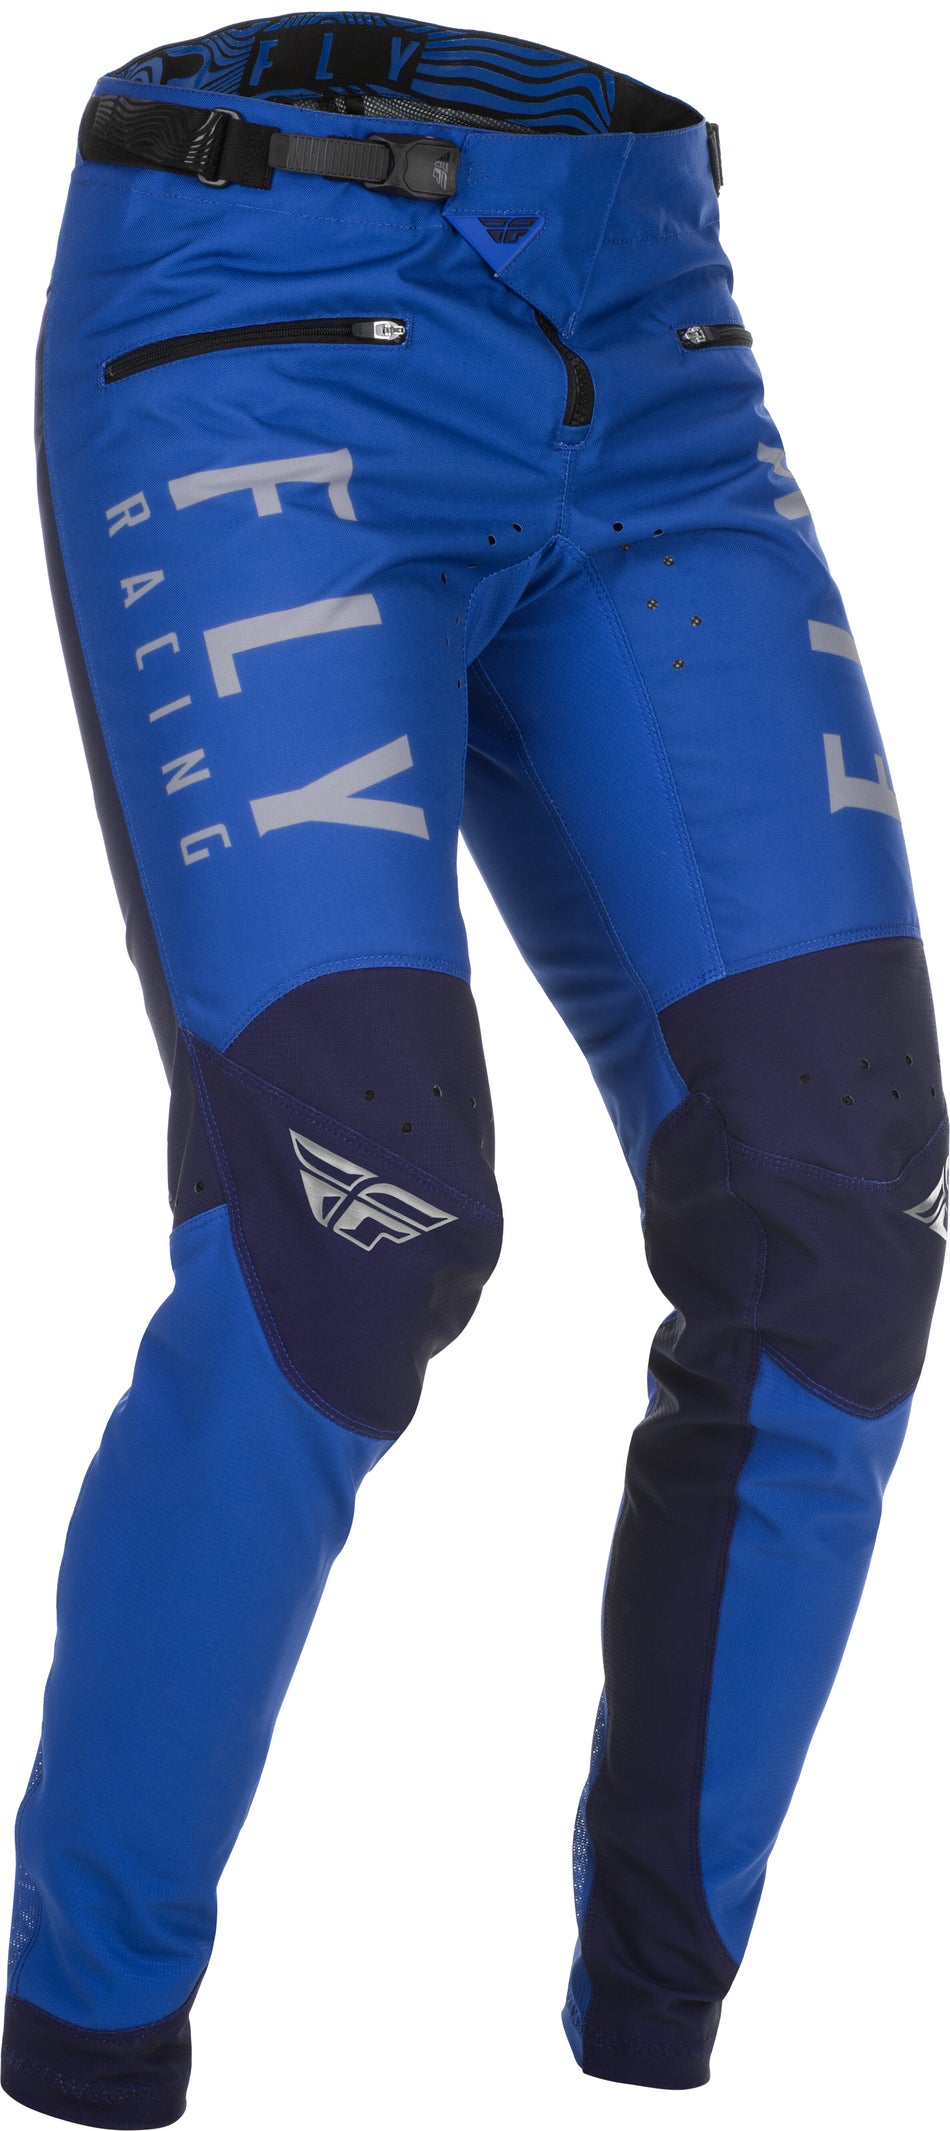 FLY RACING Kinetic Bicycle Pants Blue Sz 28 374-04128